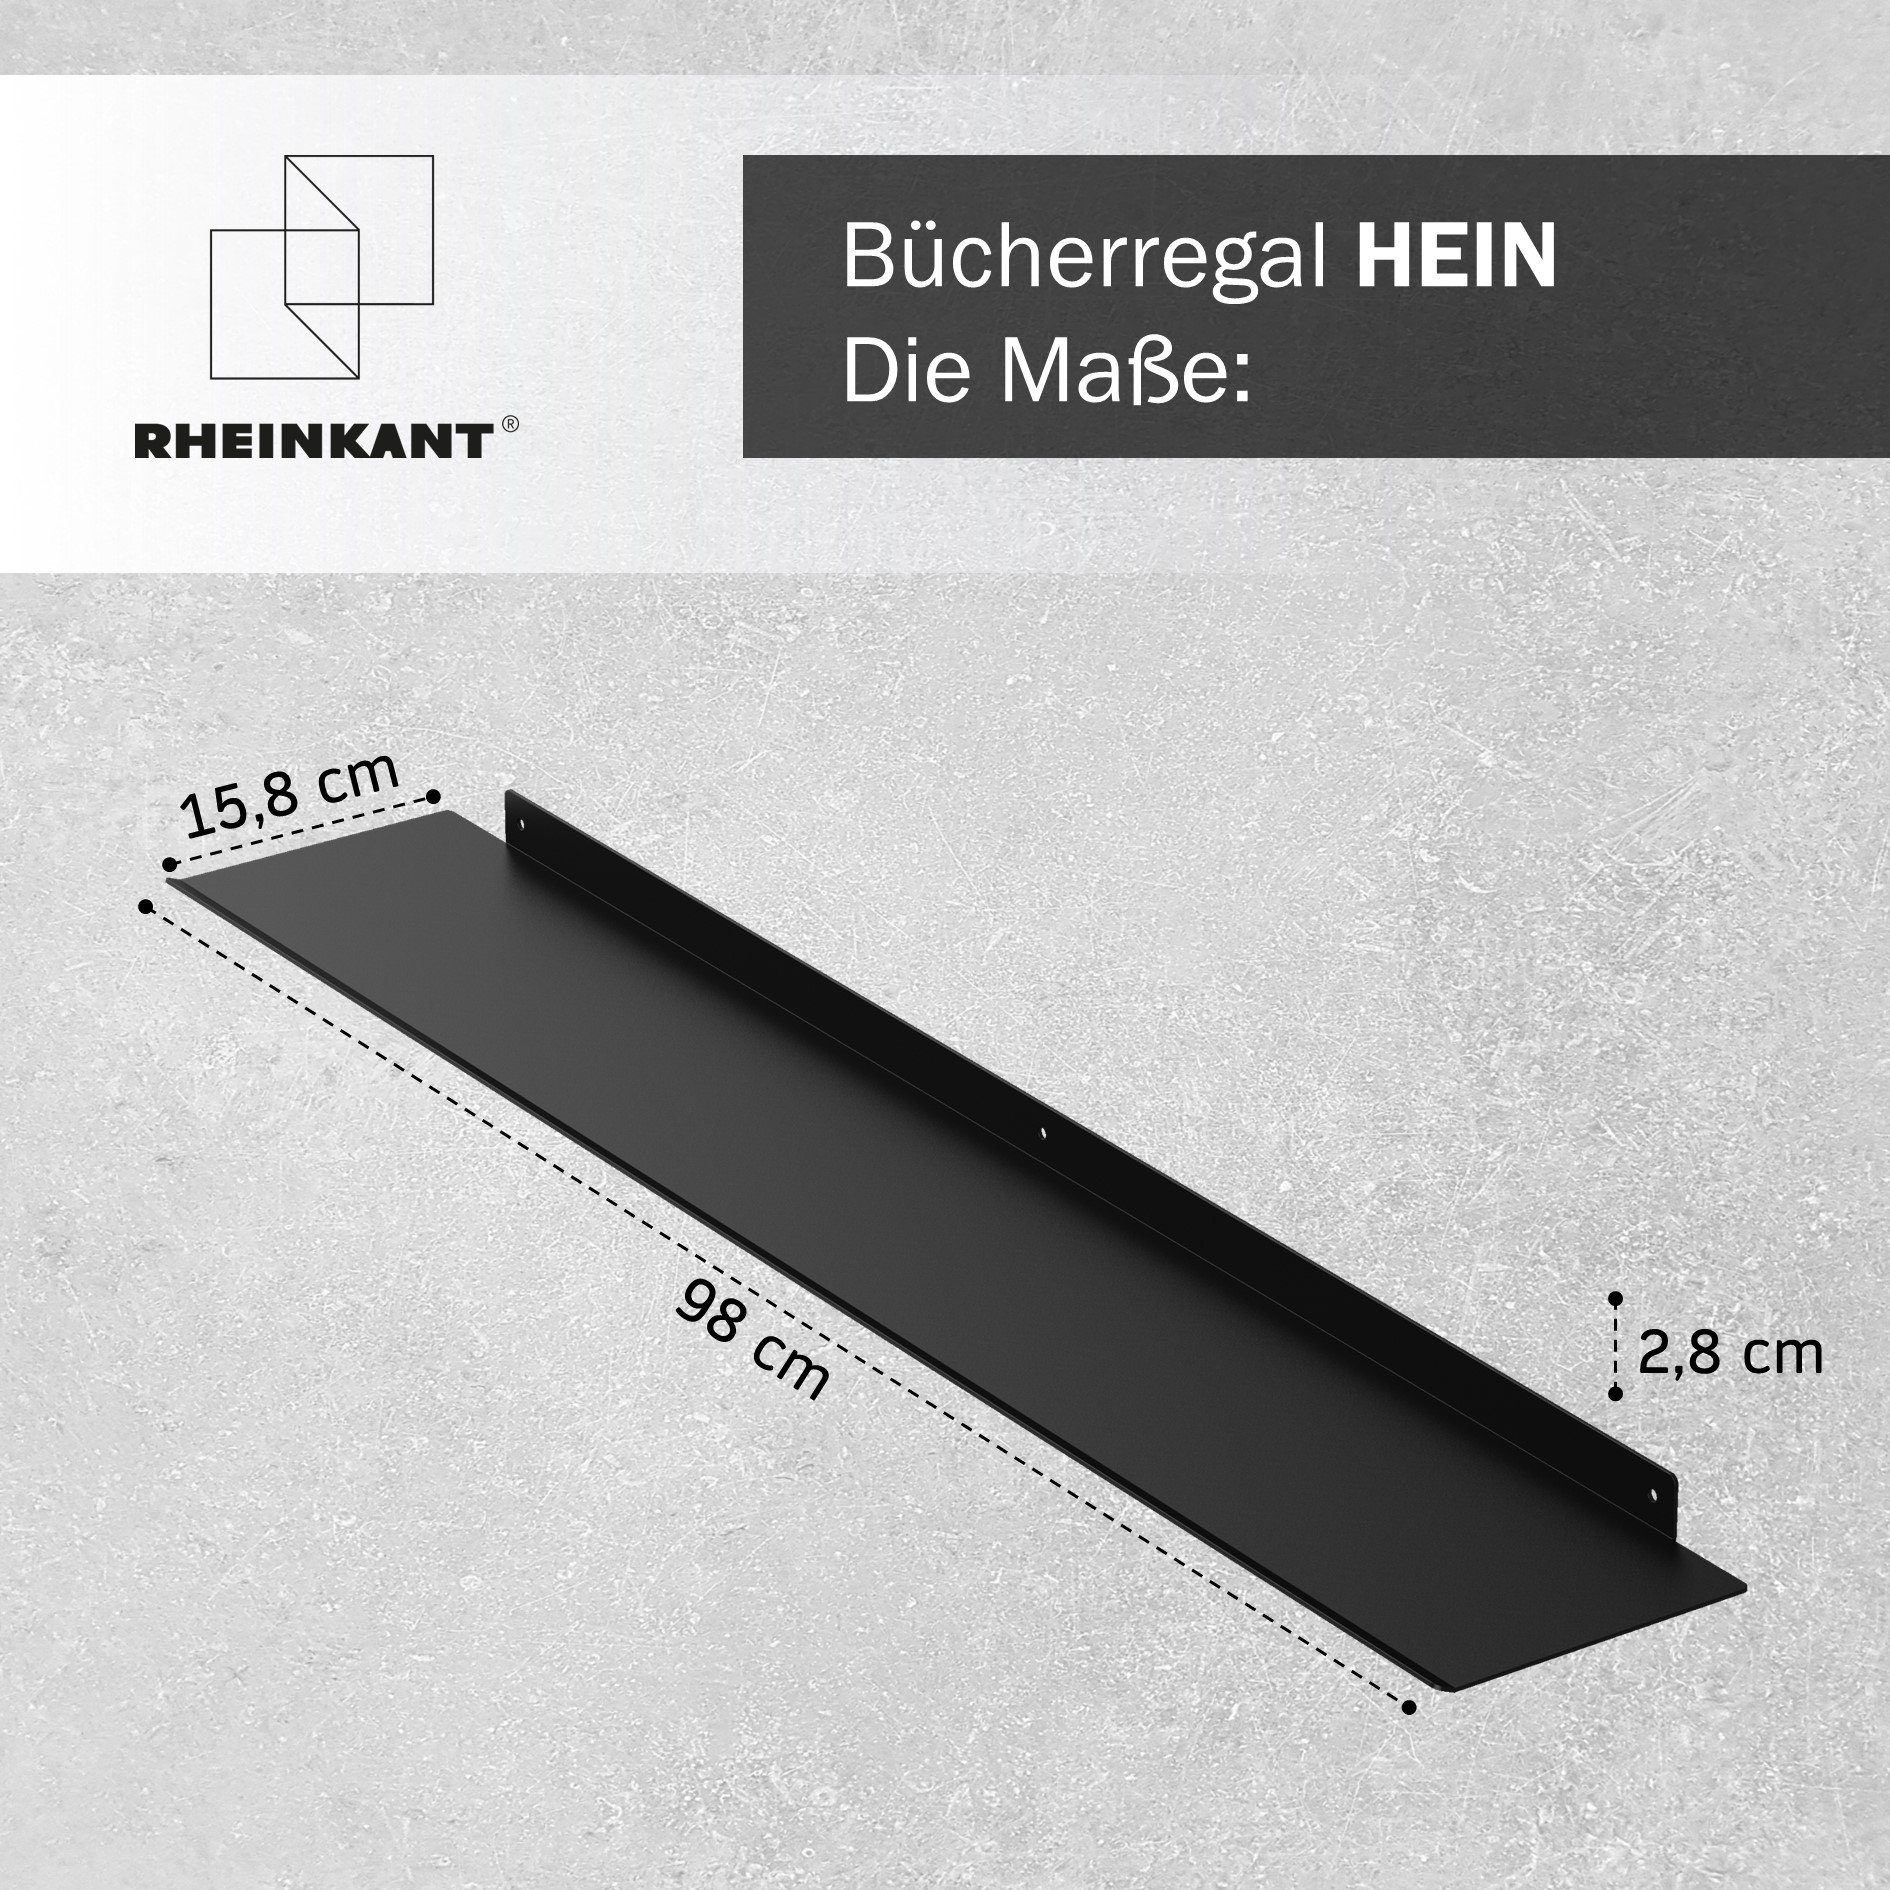 RHEINKANT Germany, Made Made 98 pulverbeschichtetem in cm, Stahl. hochwertigem Schweberegal, Aus Bücherregal HEIN, Germany, Schwarz in Wandregal